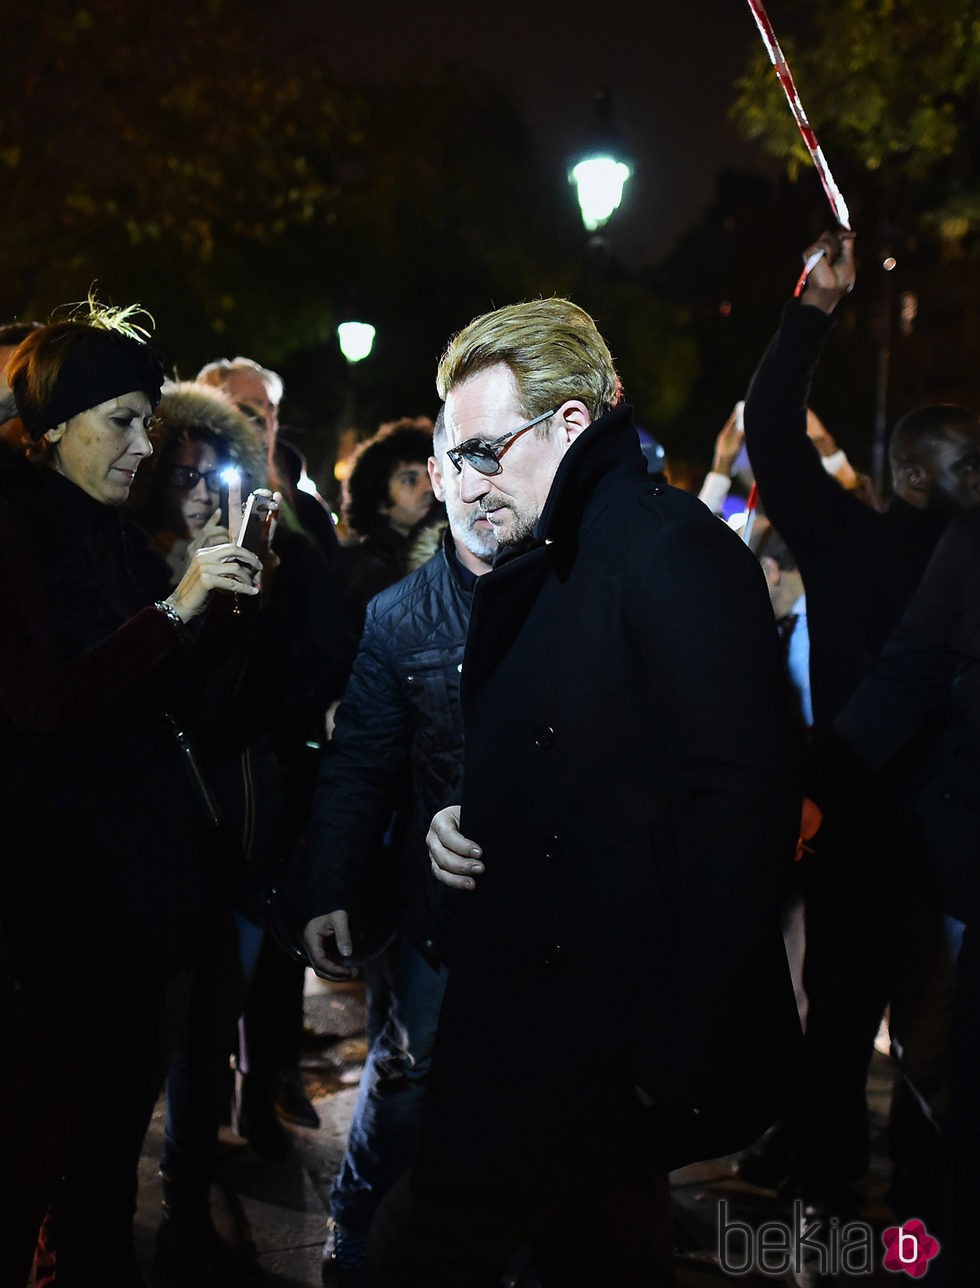 Bono rinde homenaje a las víctimas del atentado terrorista de la Sala Bataclán de París